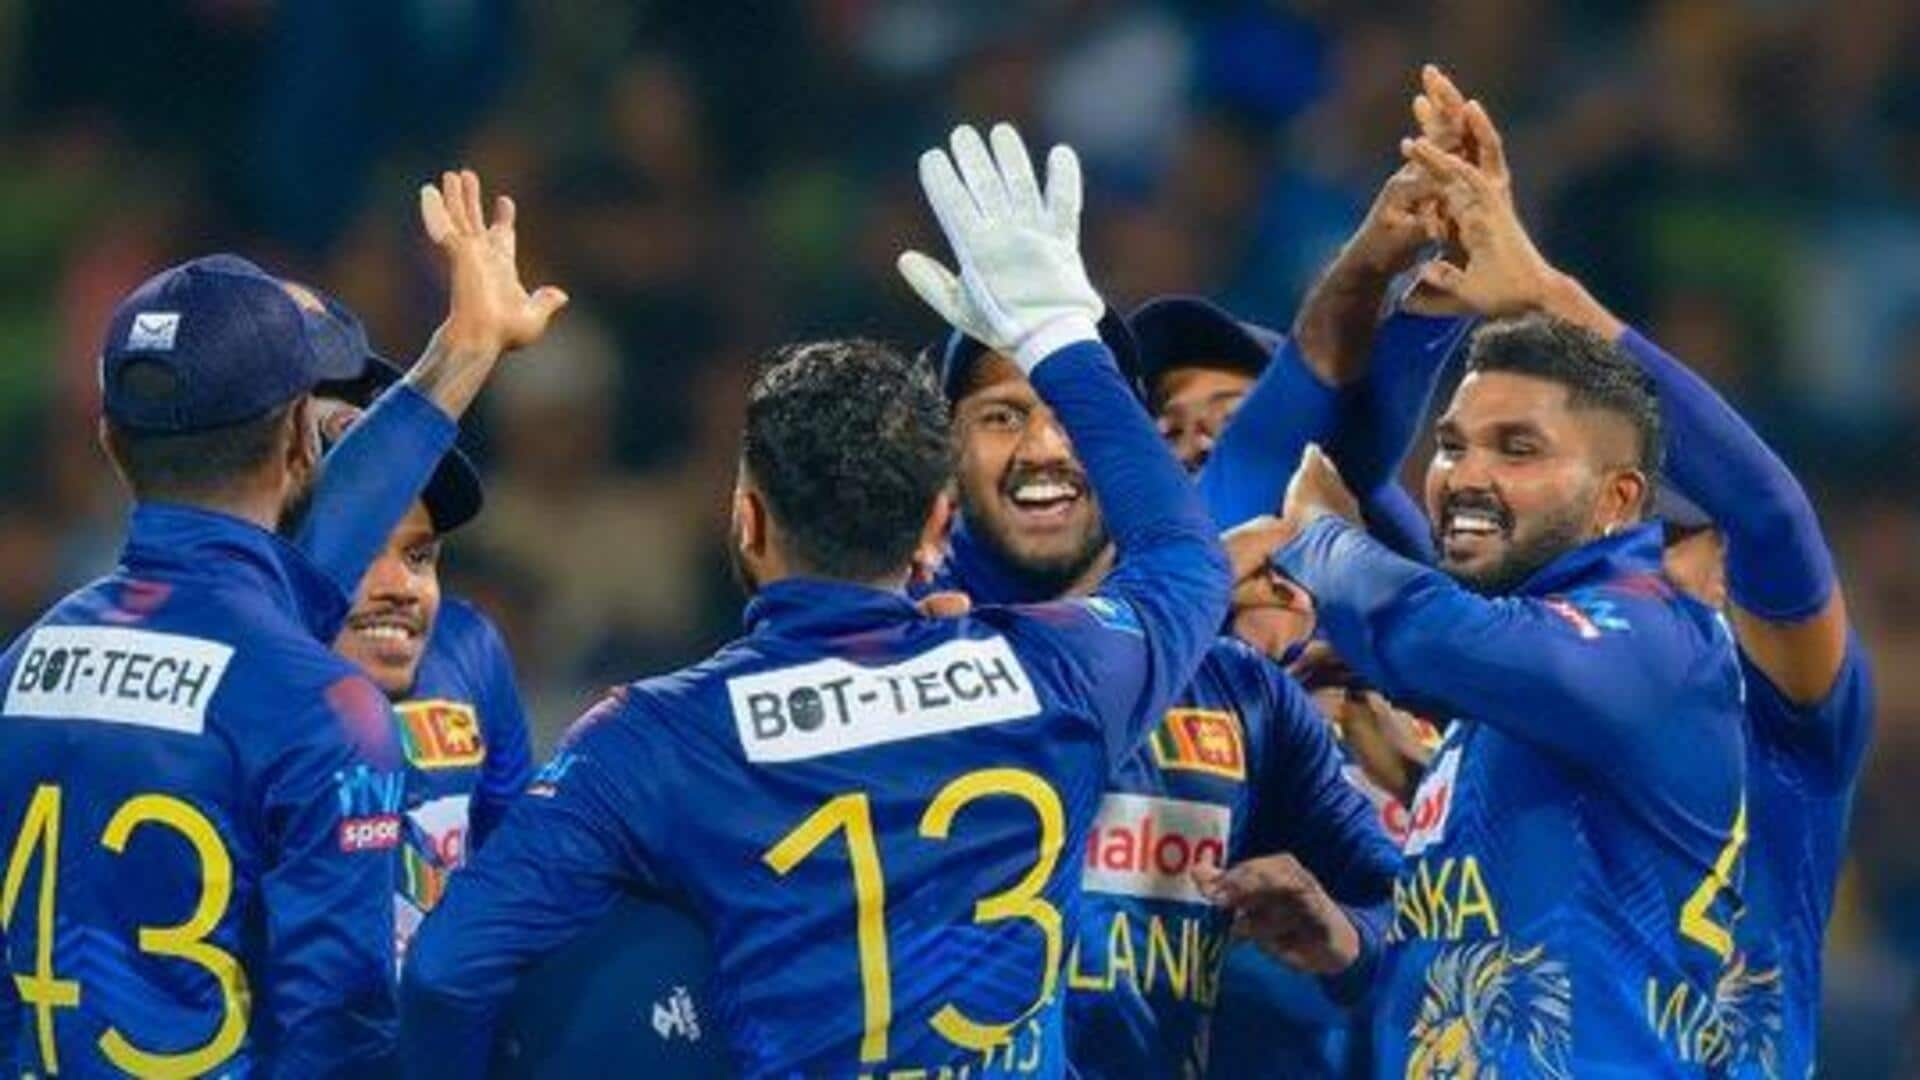 Sri Lanka humble Afghanistan in 2nd ODI, seal series: Stats